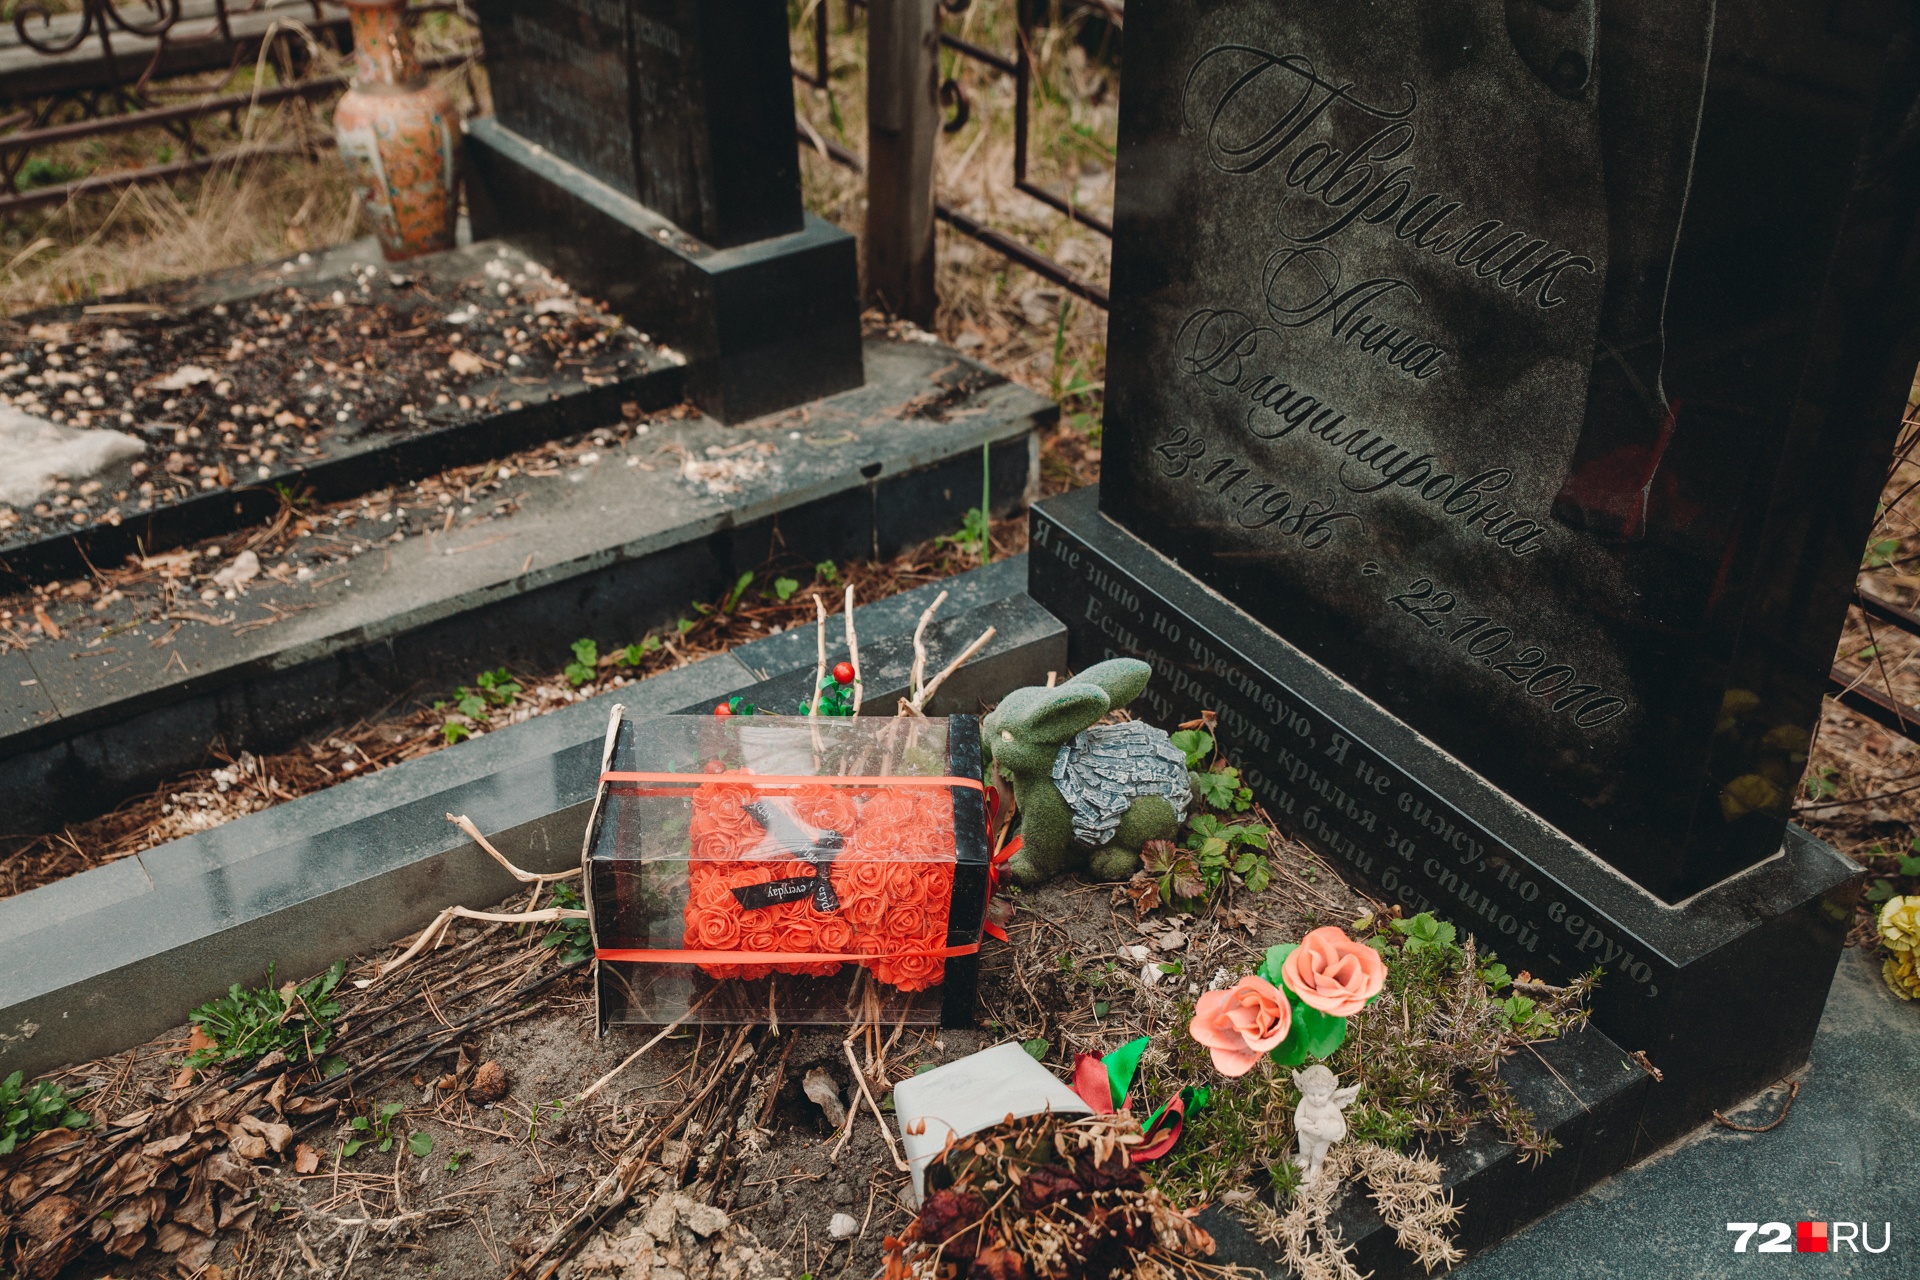 Пасхальный заяц и фигурный букет из роз в форме мишки украшают надгробье молодой женщины